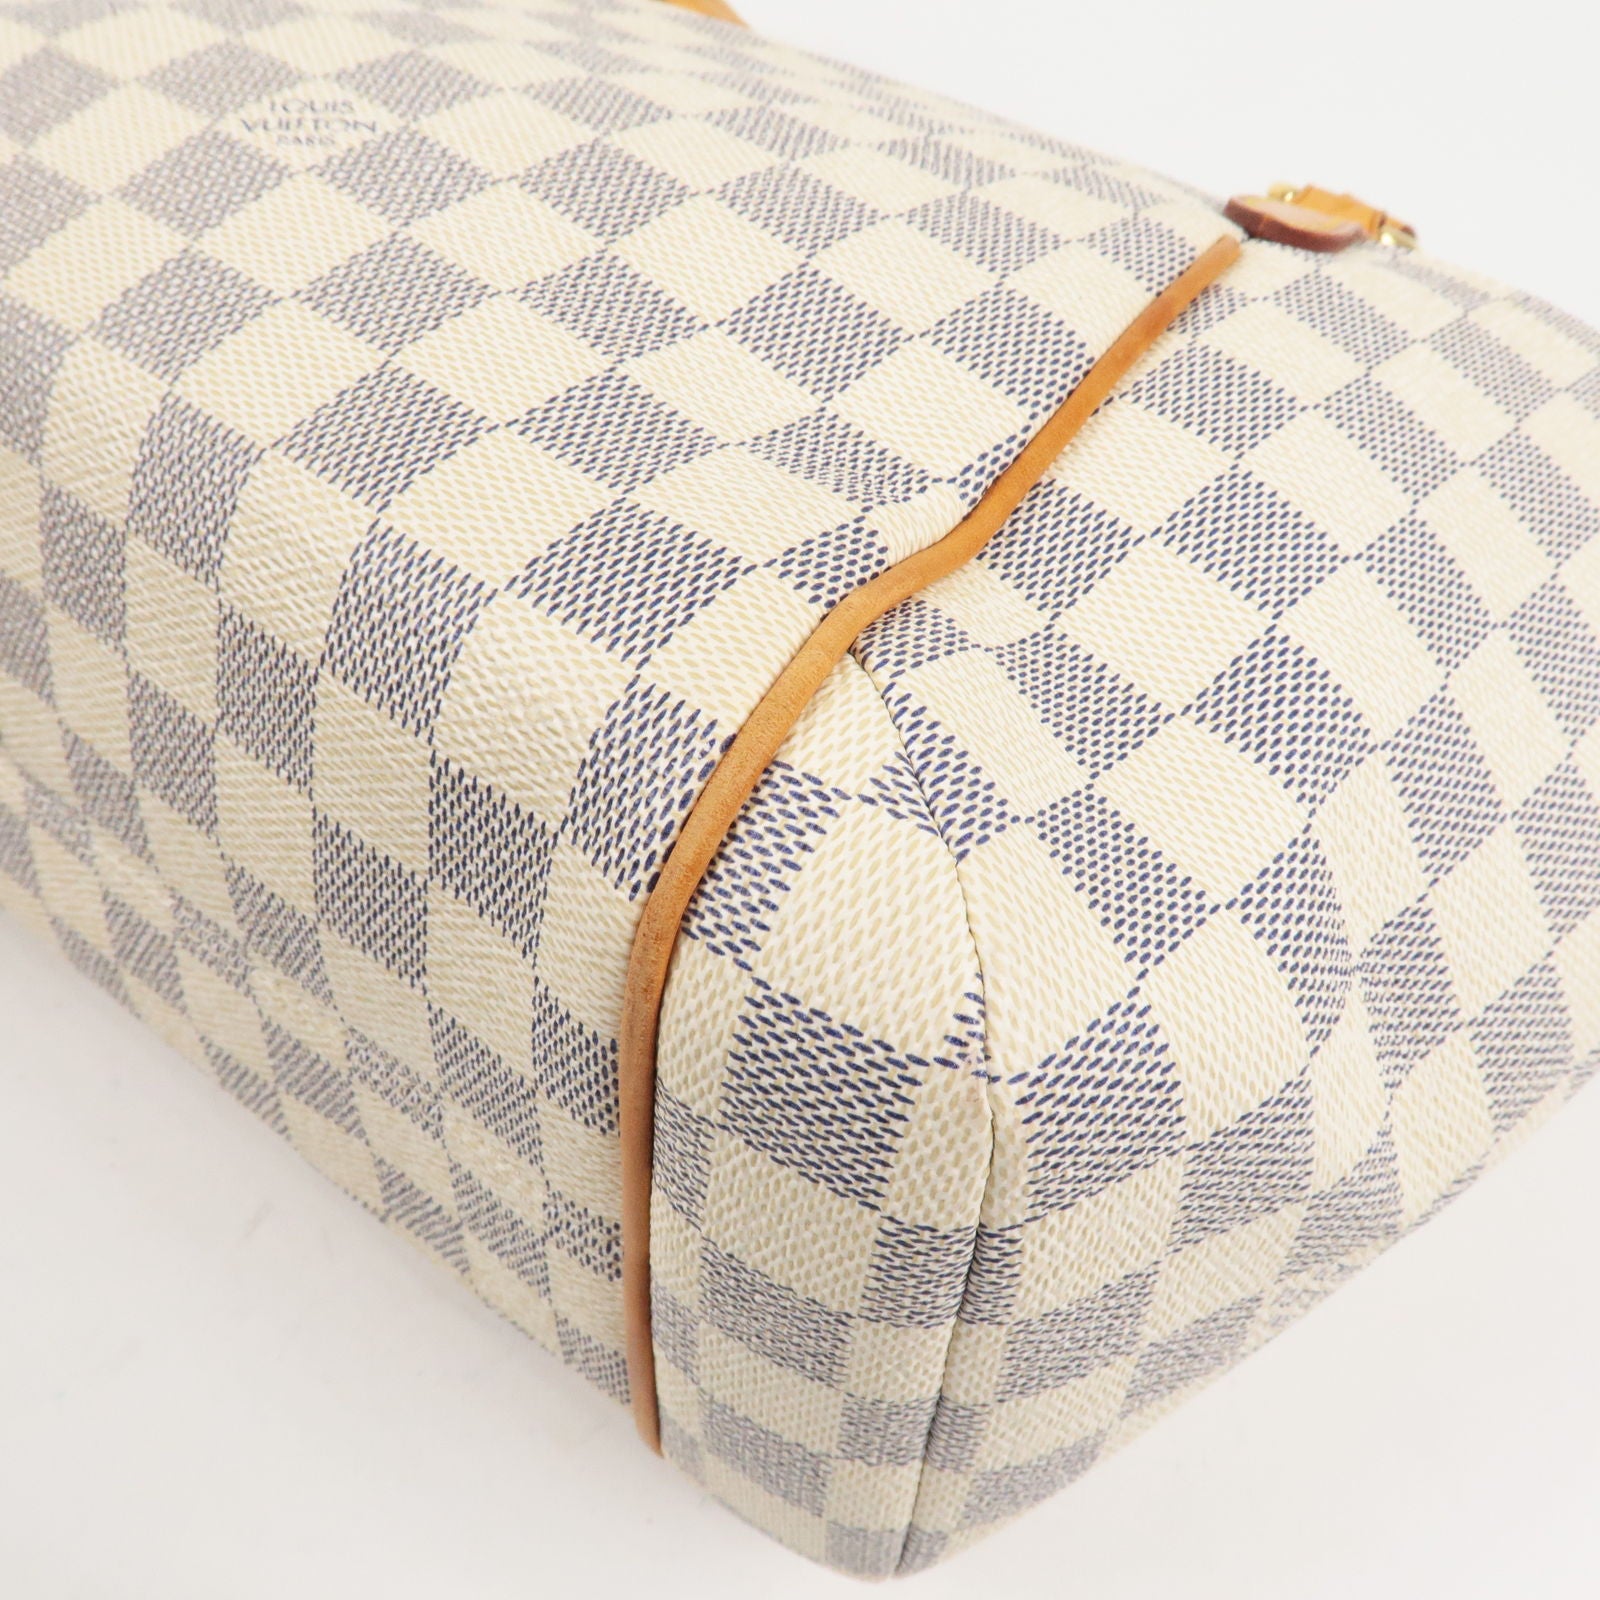 Louis Vuitton, Bags, Louis Vuitton Totally Pm Damier Azur Shoulder Bag